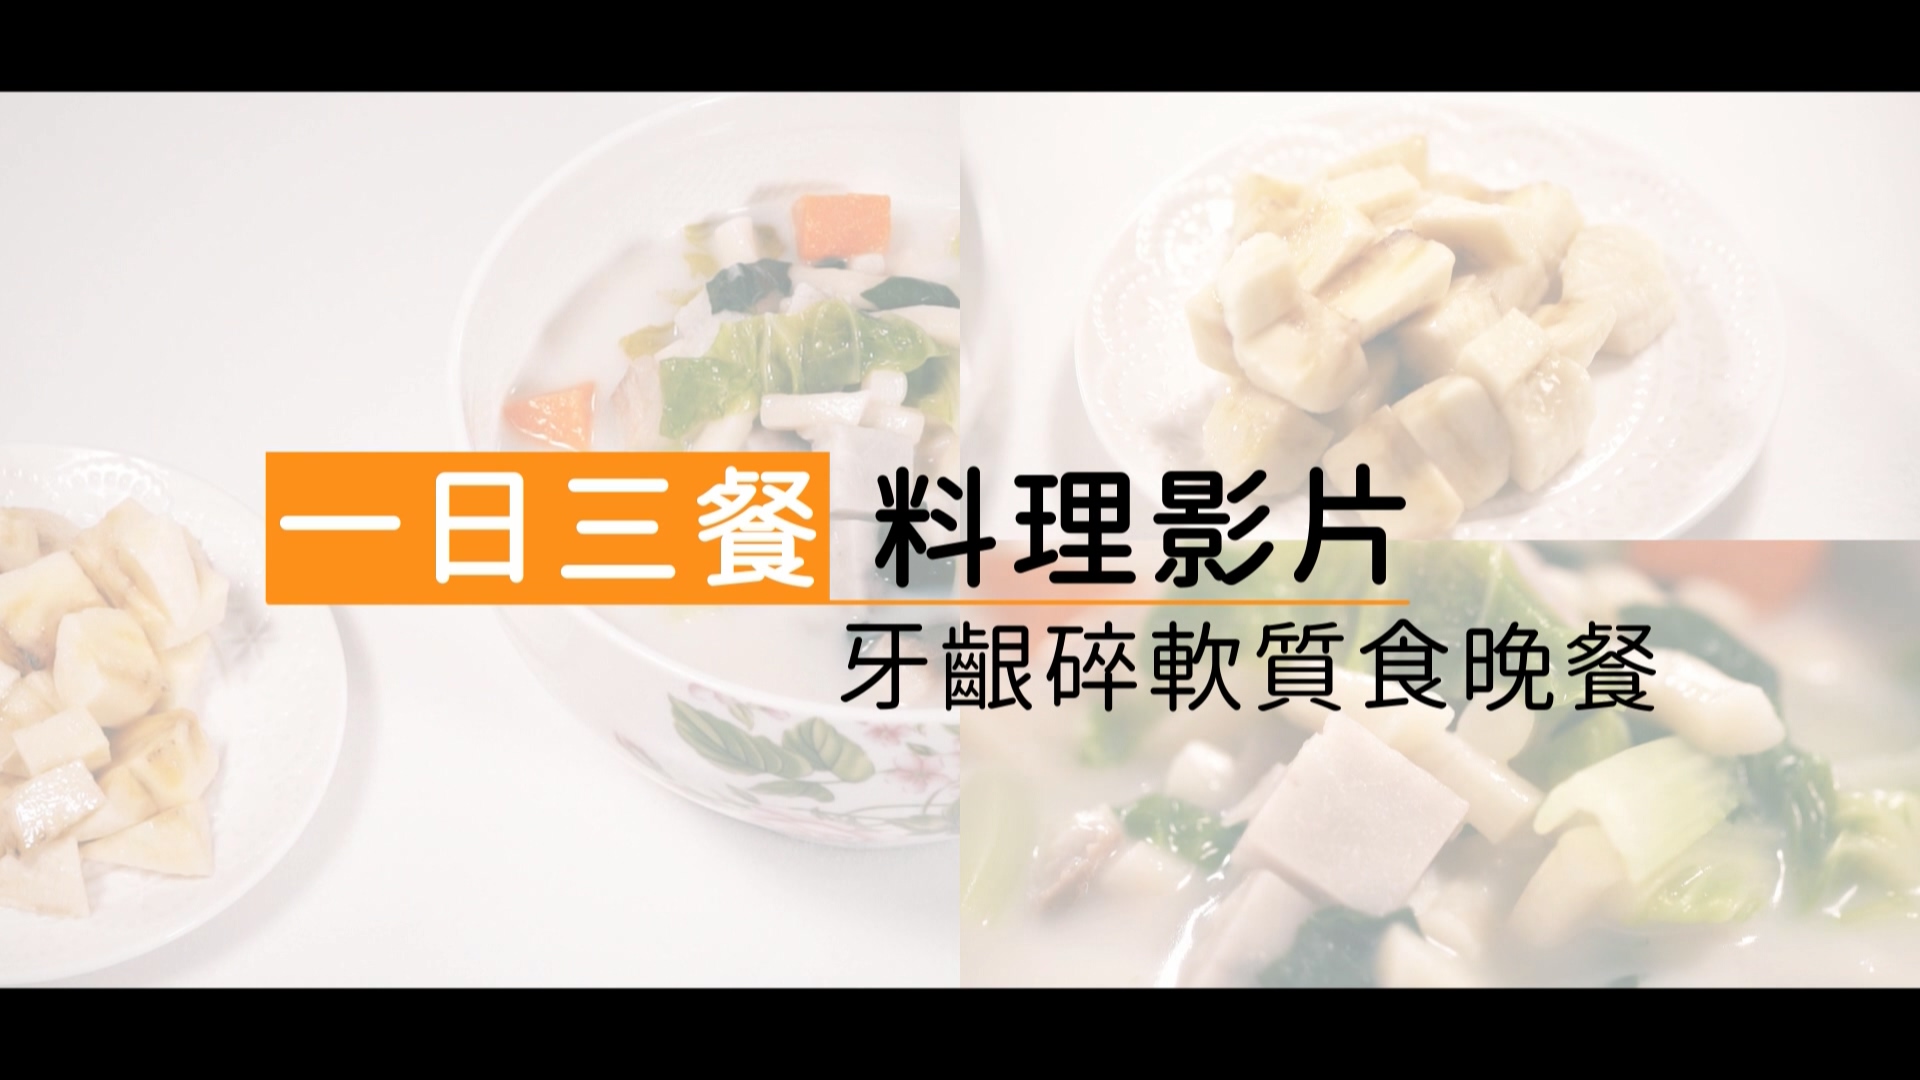 飲食質地料理影片-牙齦碎軟質食-晚餐